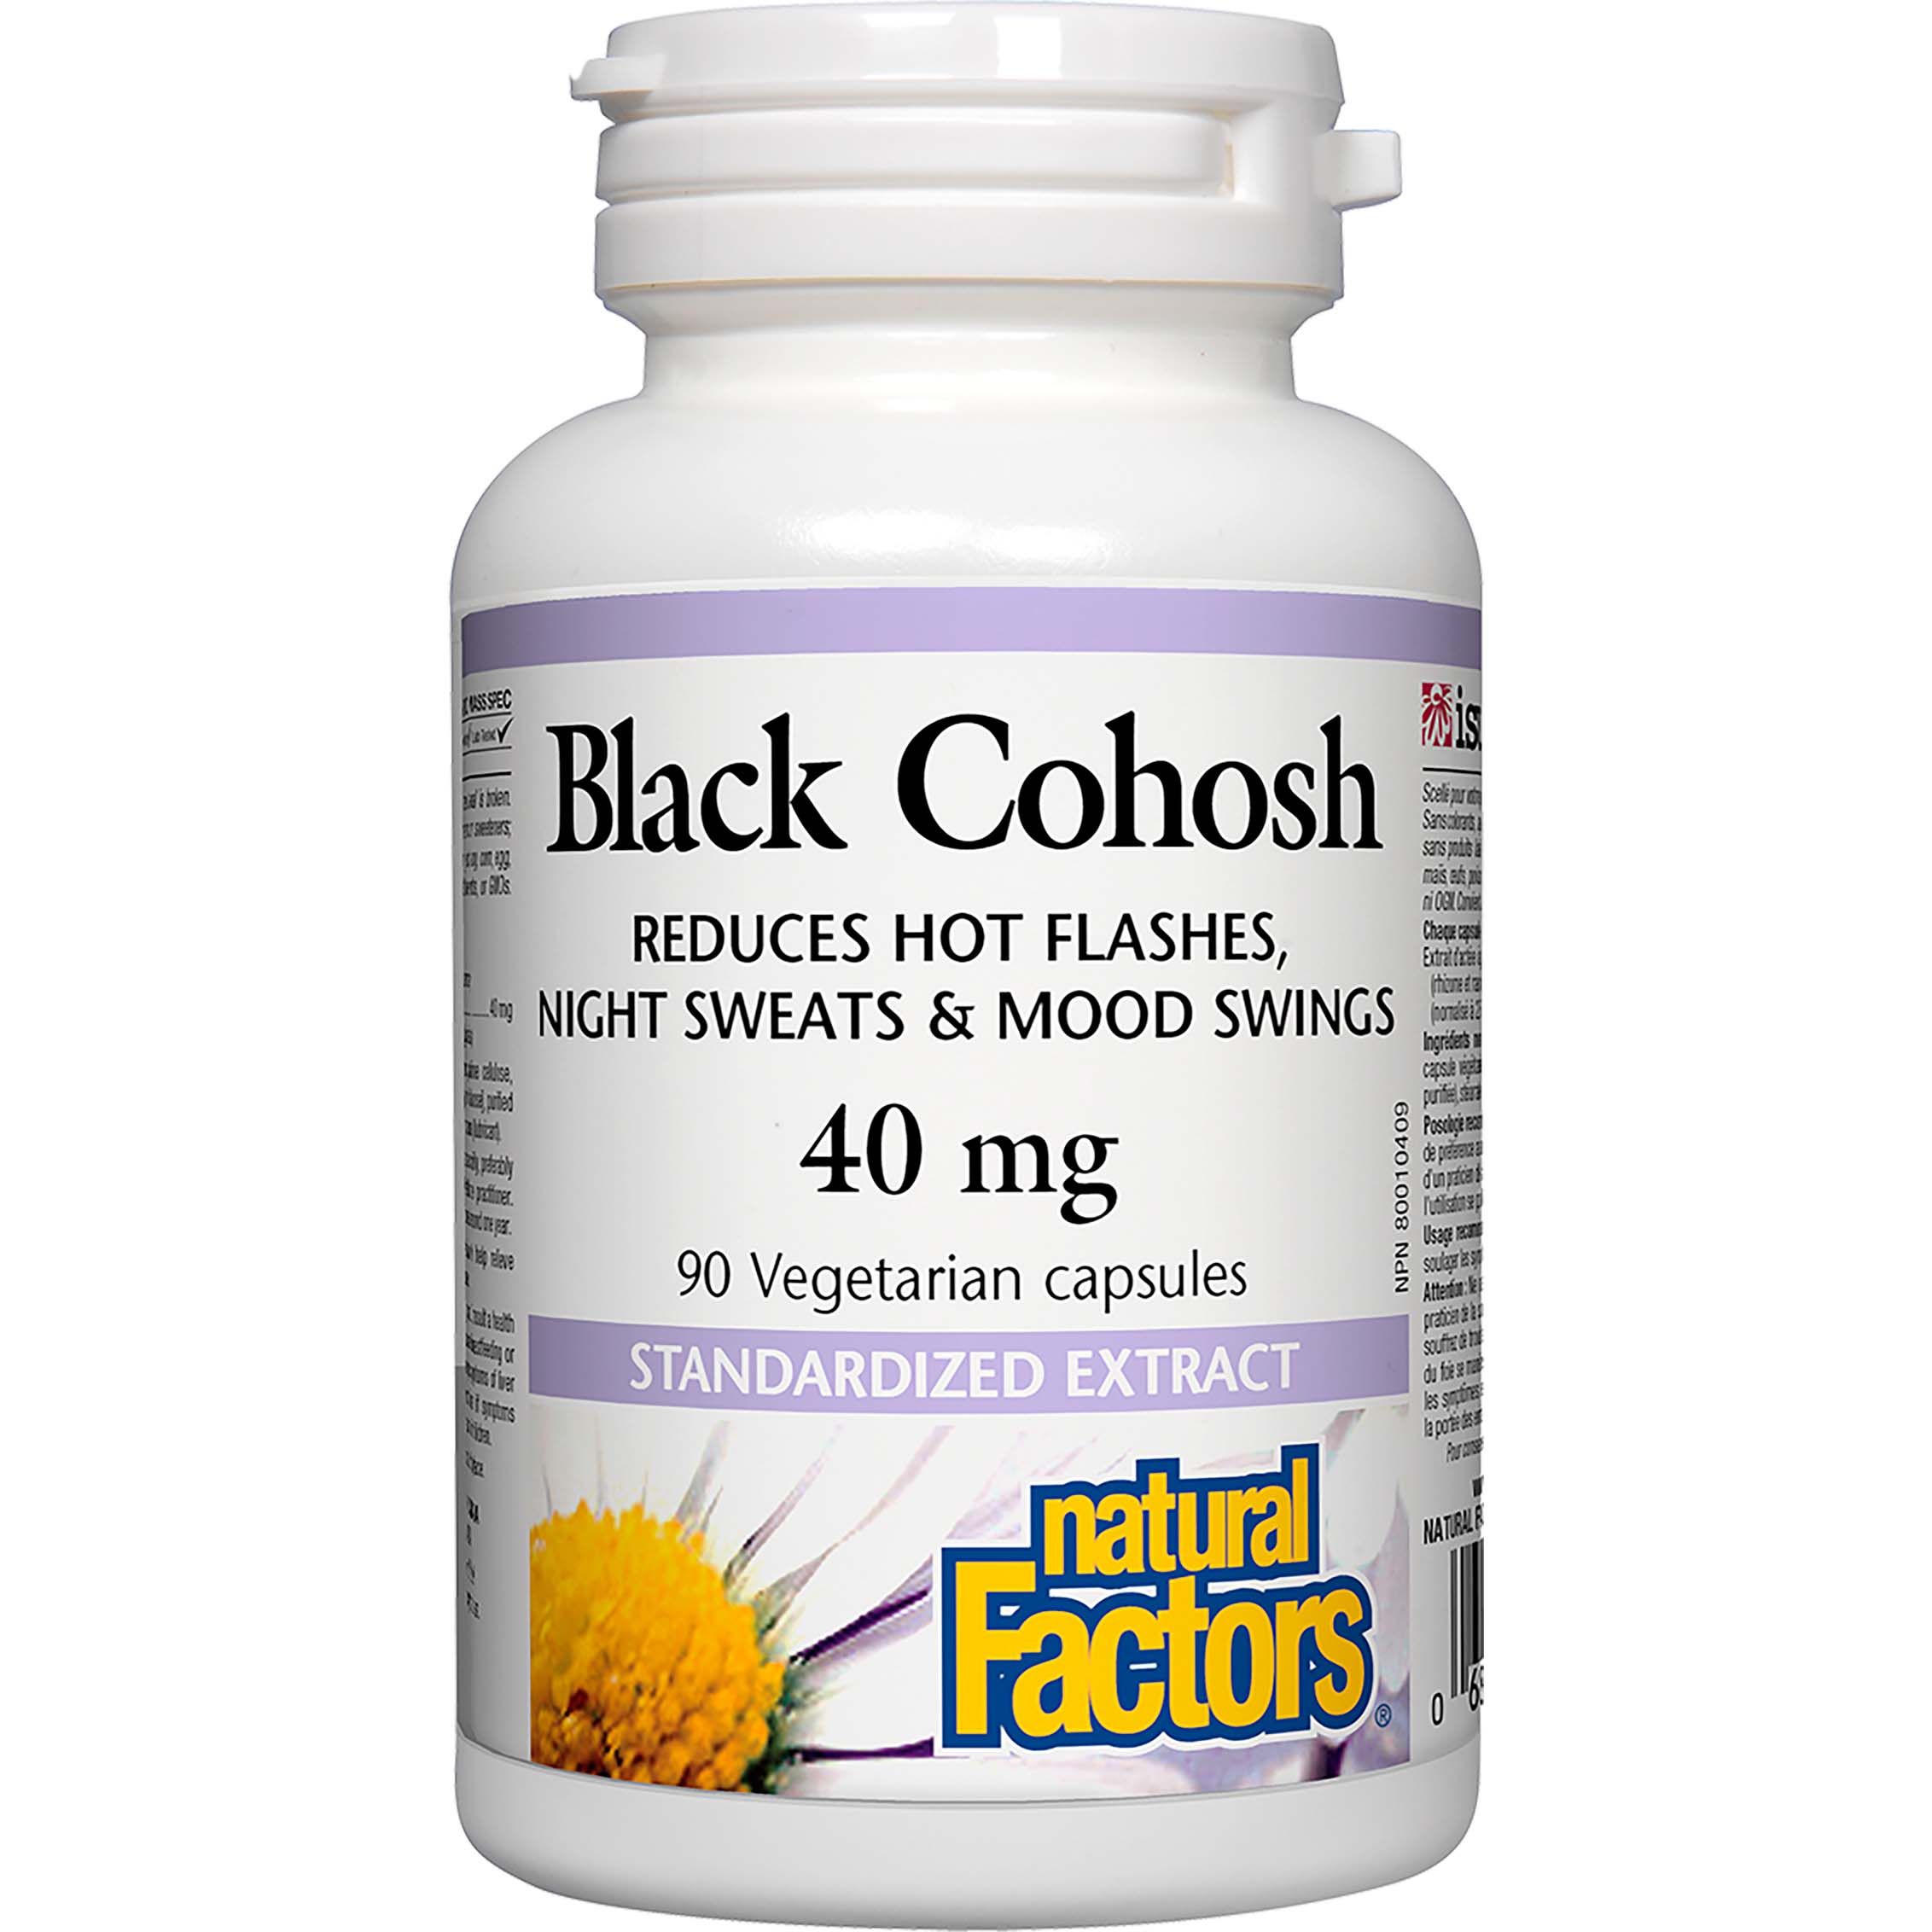 Natural Factors Black Cohosh Extract, 80 mg, 60 Softgels